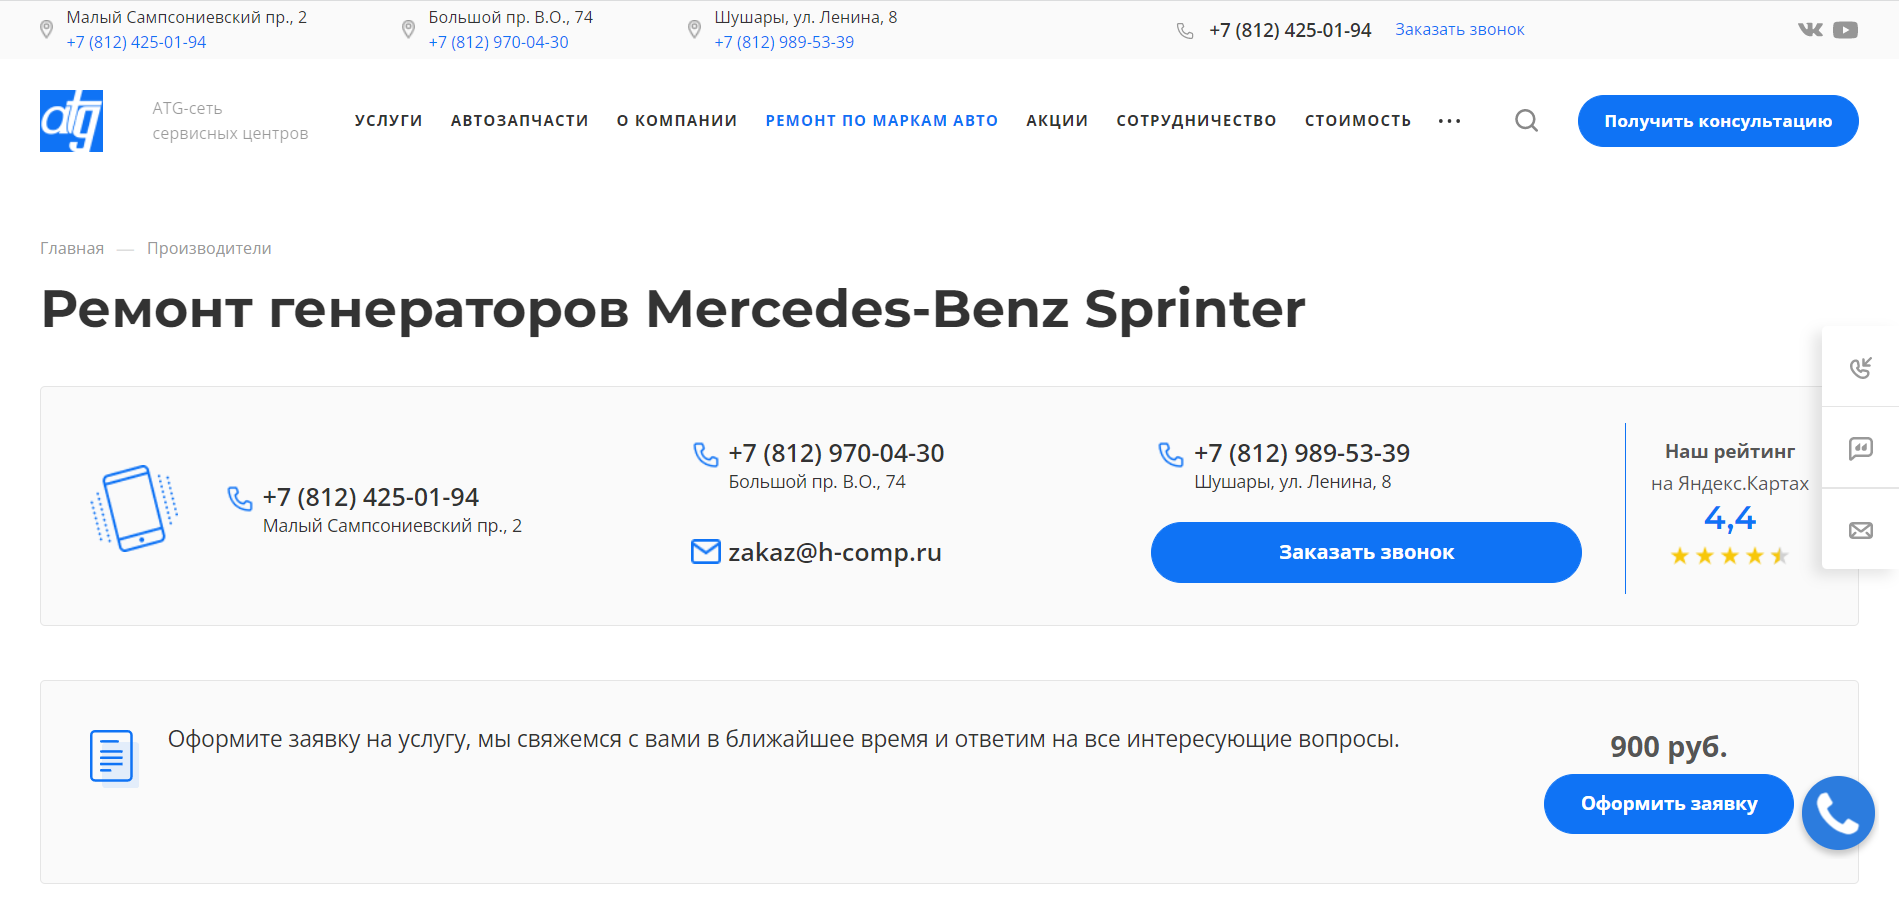 Ремонт генераторов Mercedes-Benz Sprinter